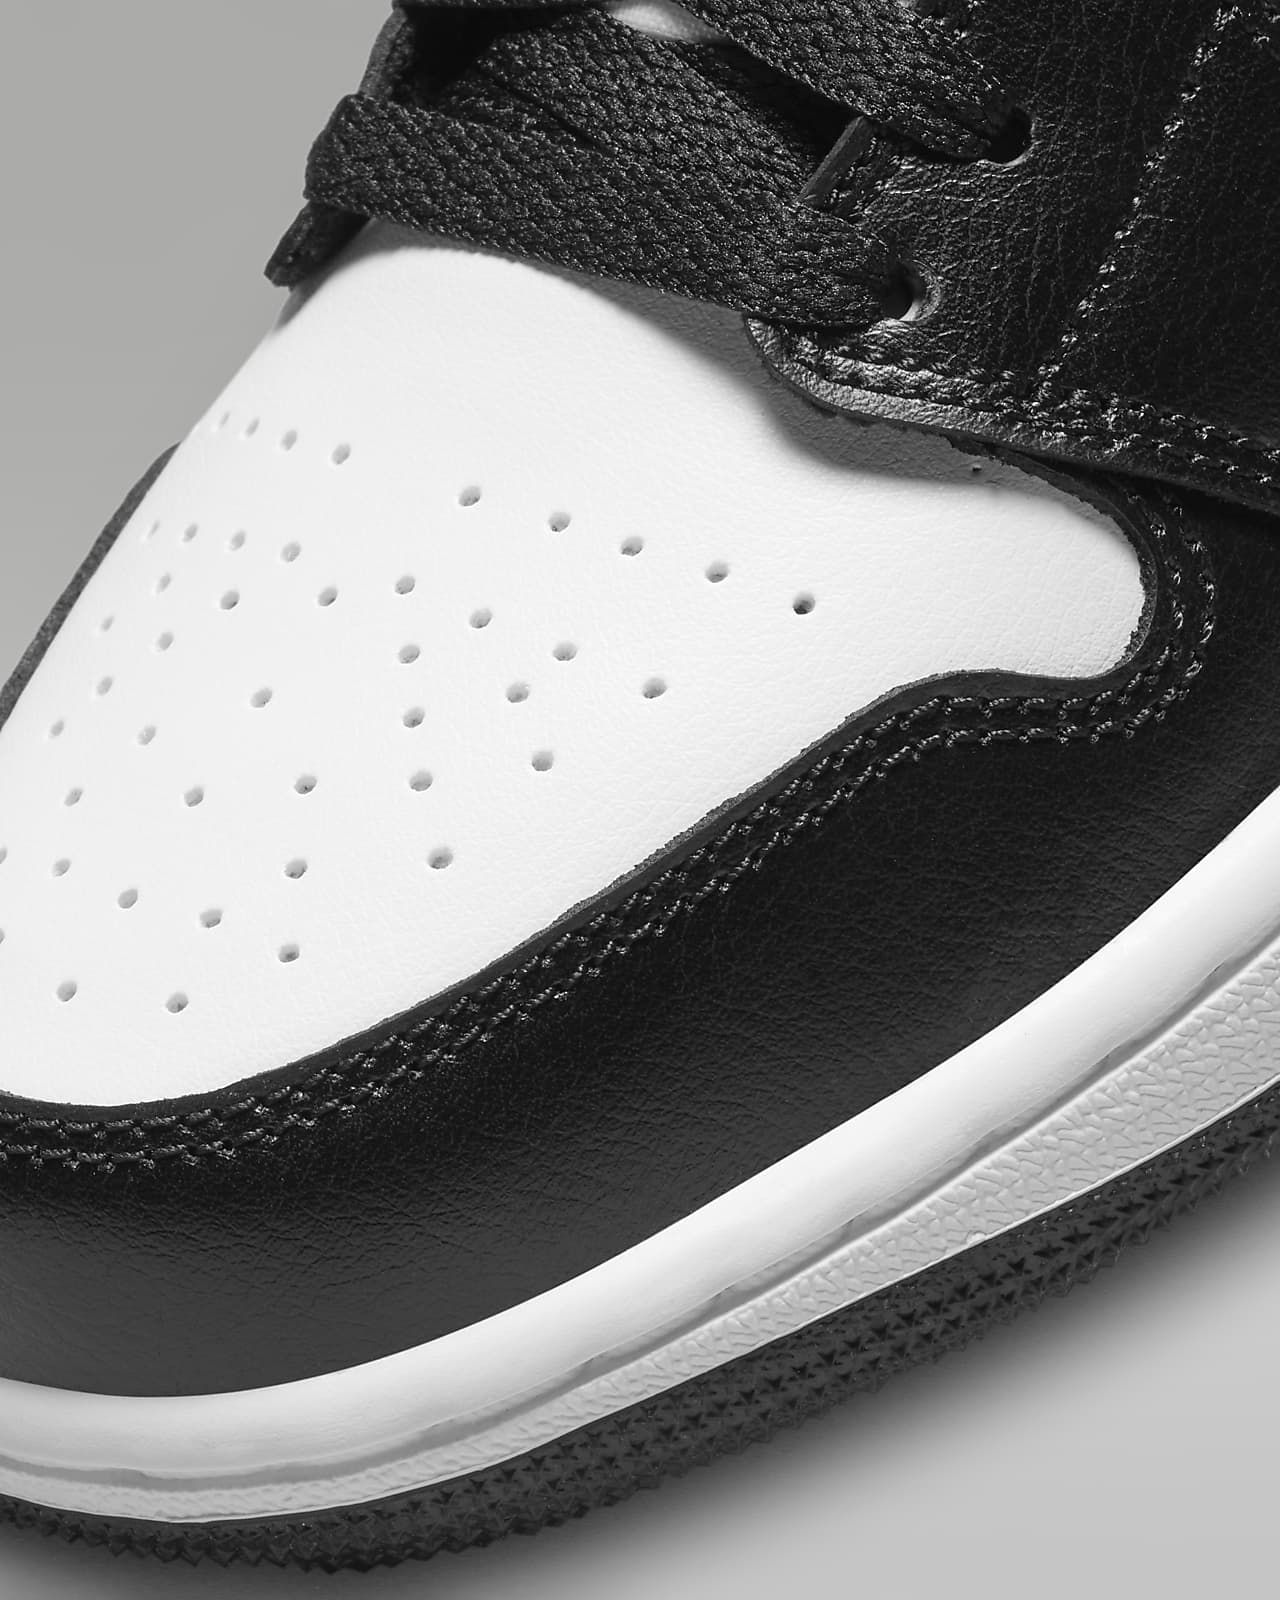 Nike WMNS Air Jordan 1 Low "White/Black"